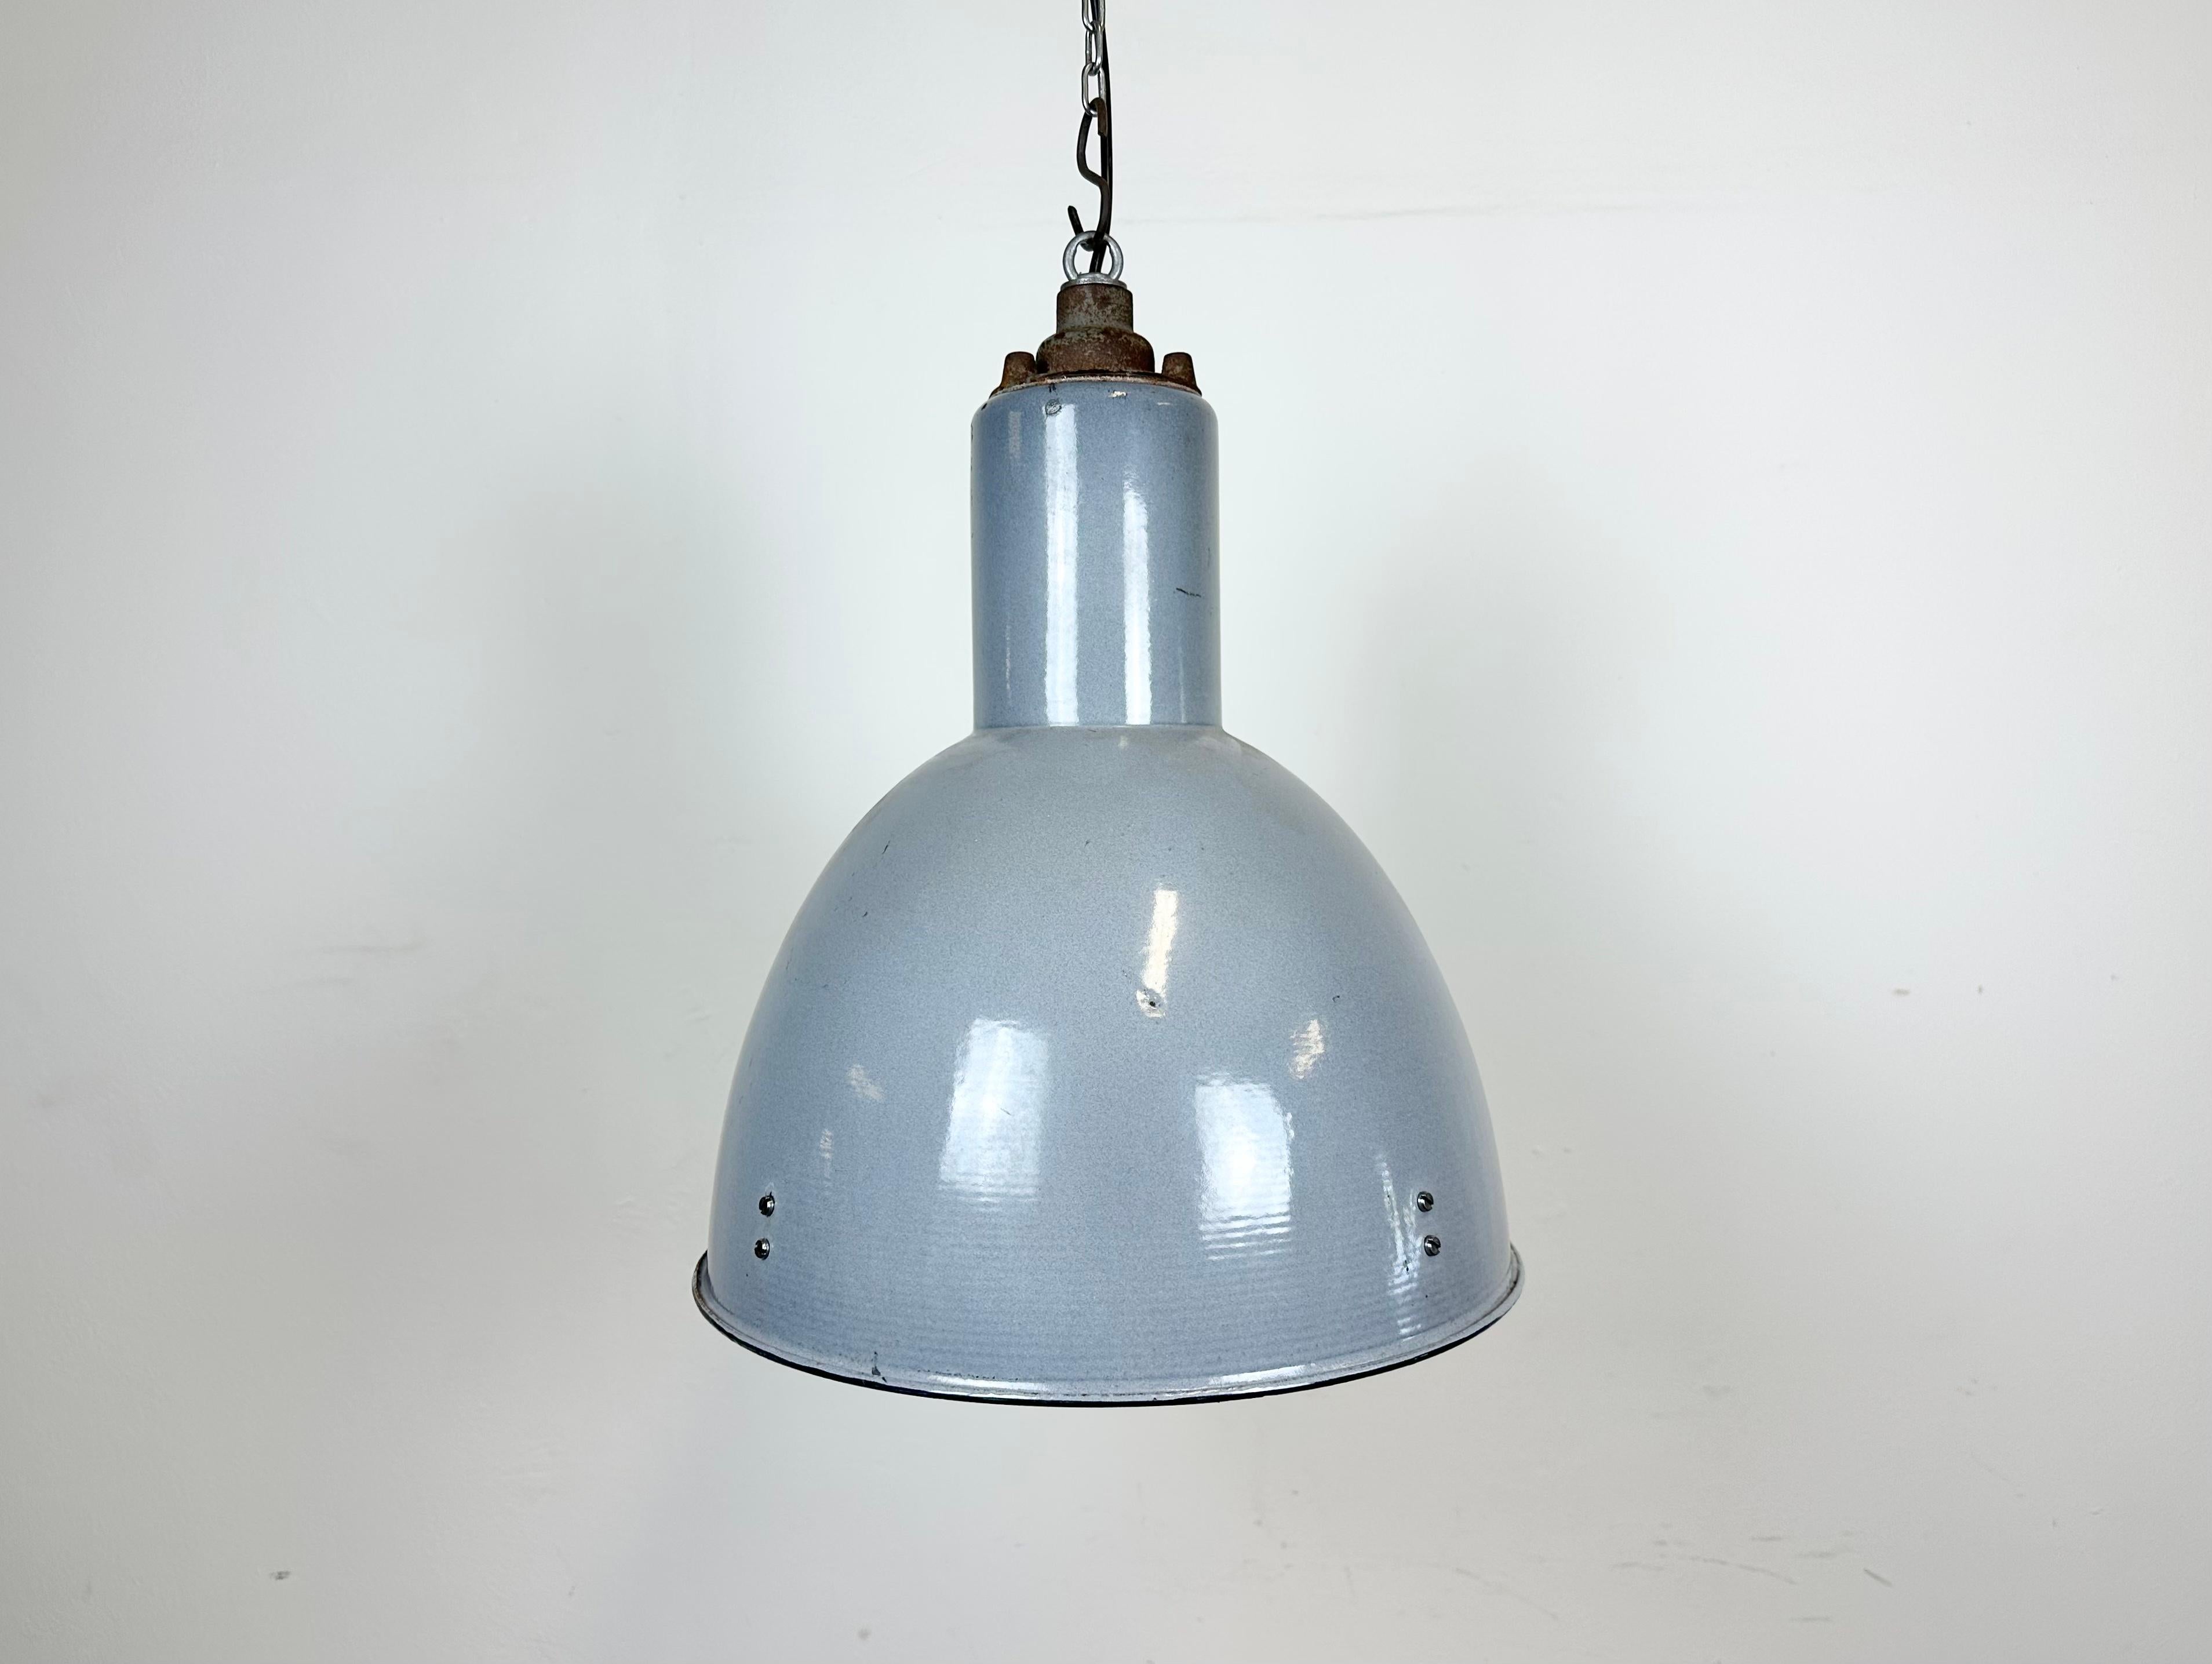 Lampe industrielle vintage conçue dans la période du Bauhaus, fabriquée dans l'ancienne Tchécoslovaquie pendant les années 1950. Elle présente un corps en émail gris avec un intérieur en émail blanc et un dessus en fonte. Une nouvelle emboîture en